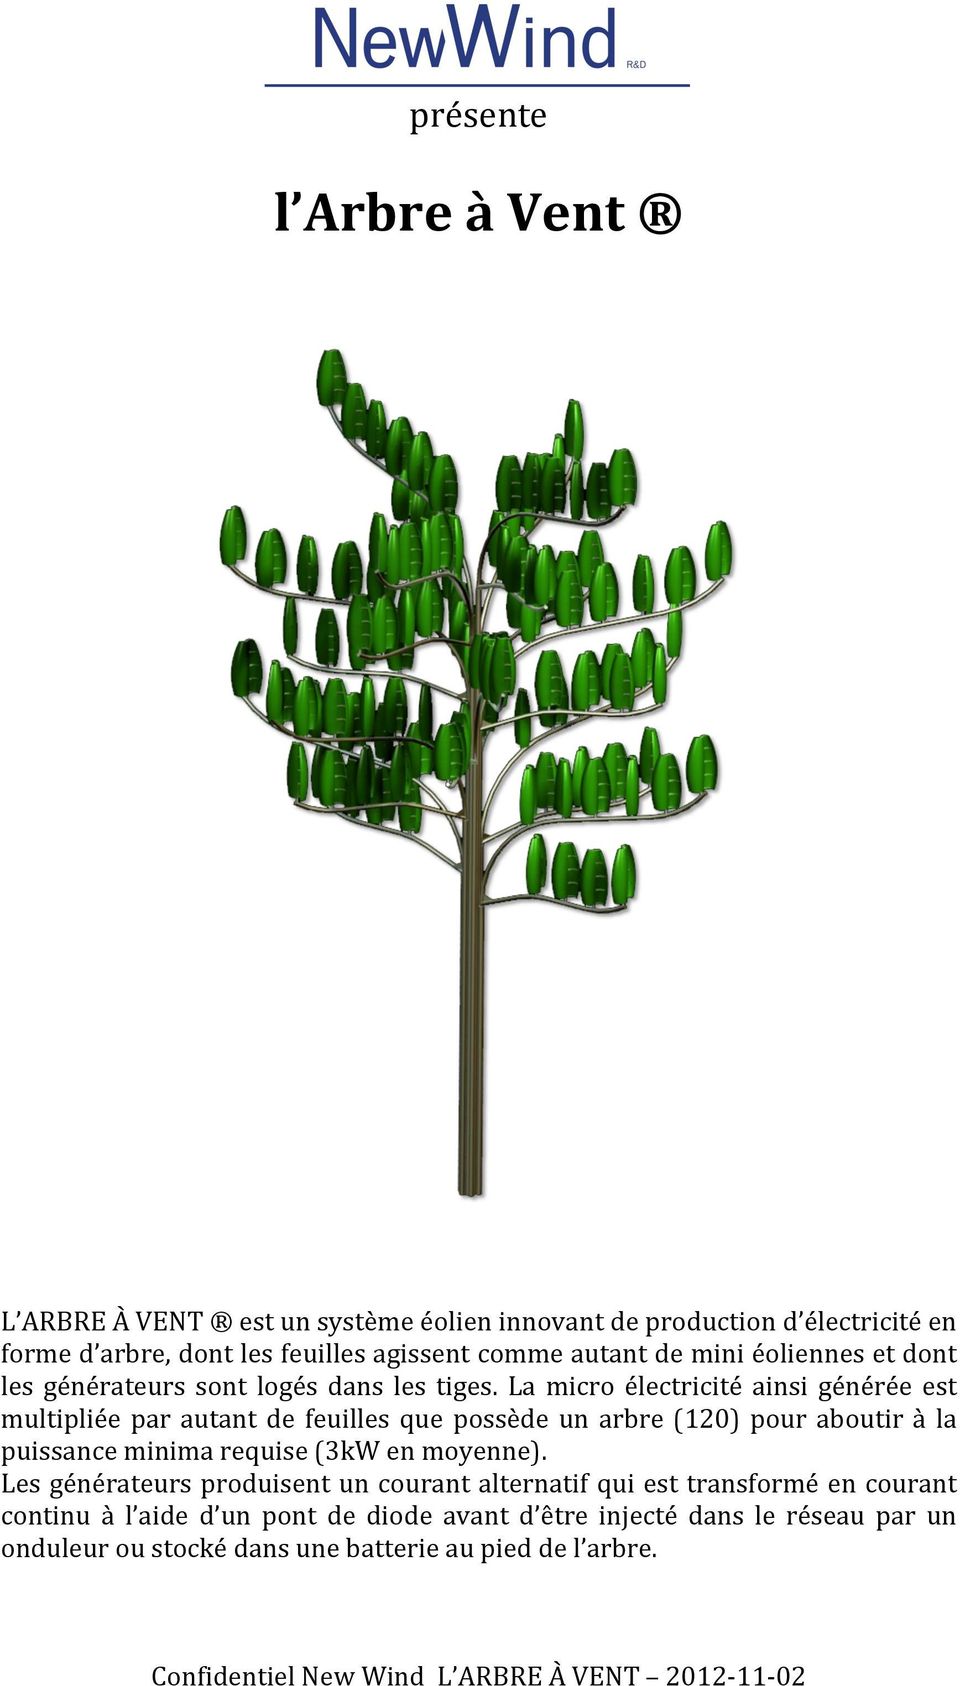 La micro électricité ainsi générée est multipliée par autant de feuilles que possède un arbre (120) pour aboutir à la puissance minima requise (3kW